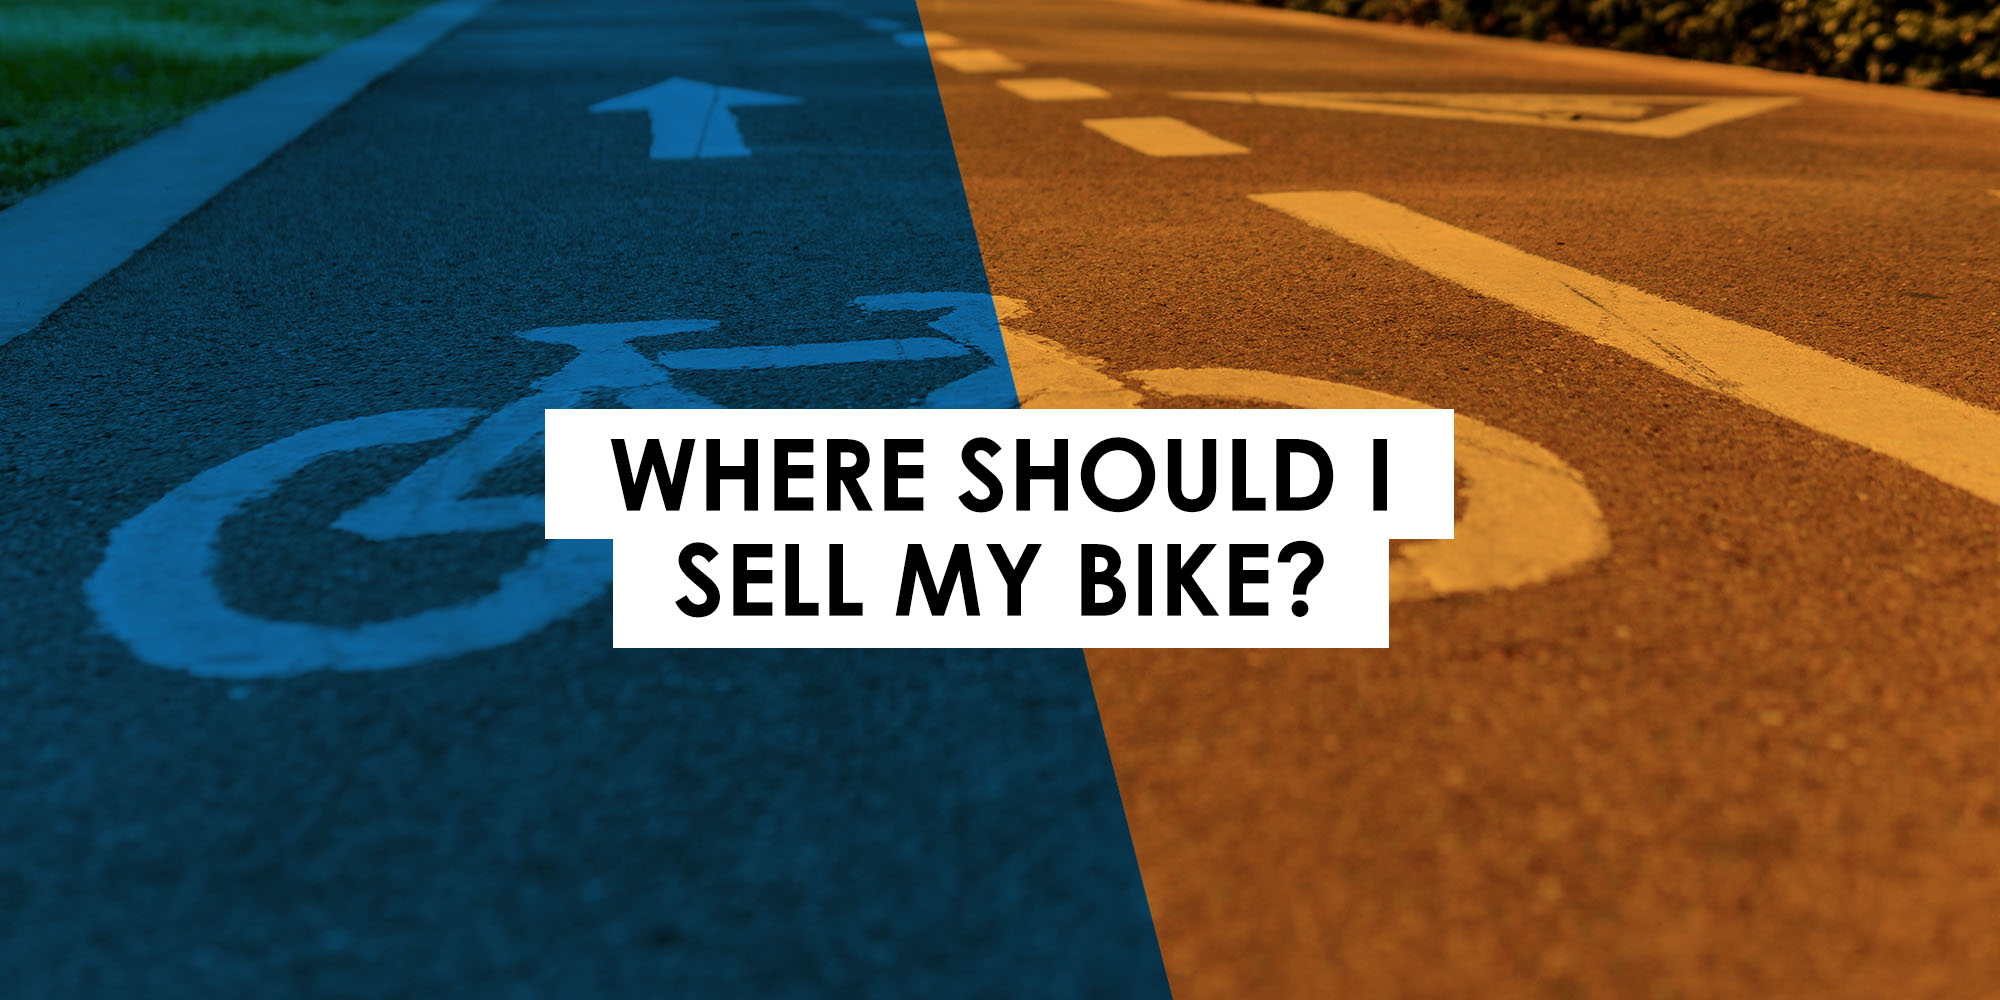 Where should I sell my bike?